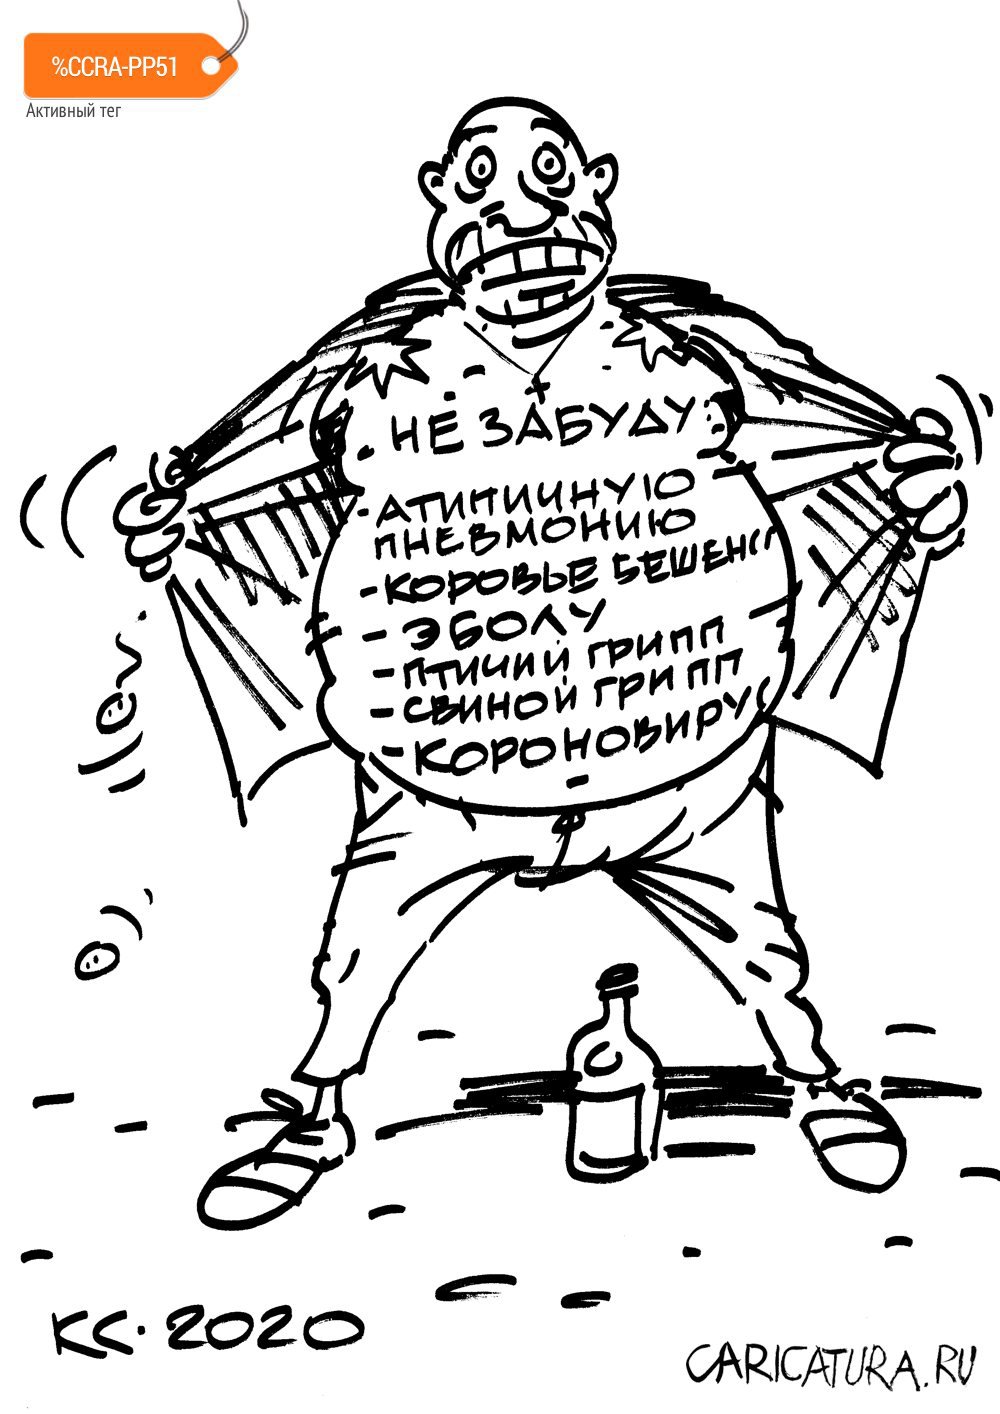 Карикатура "Не забуду!..", Вячеслав Капрельянц